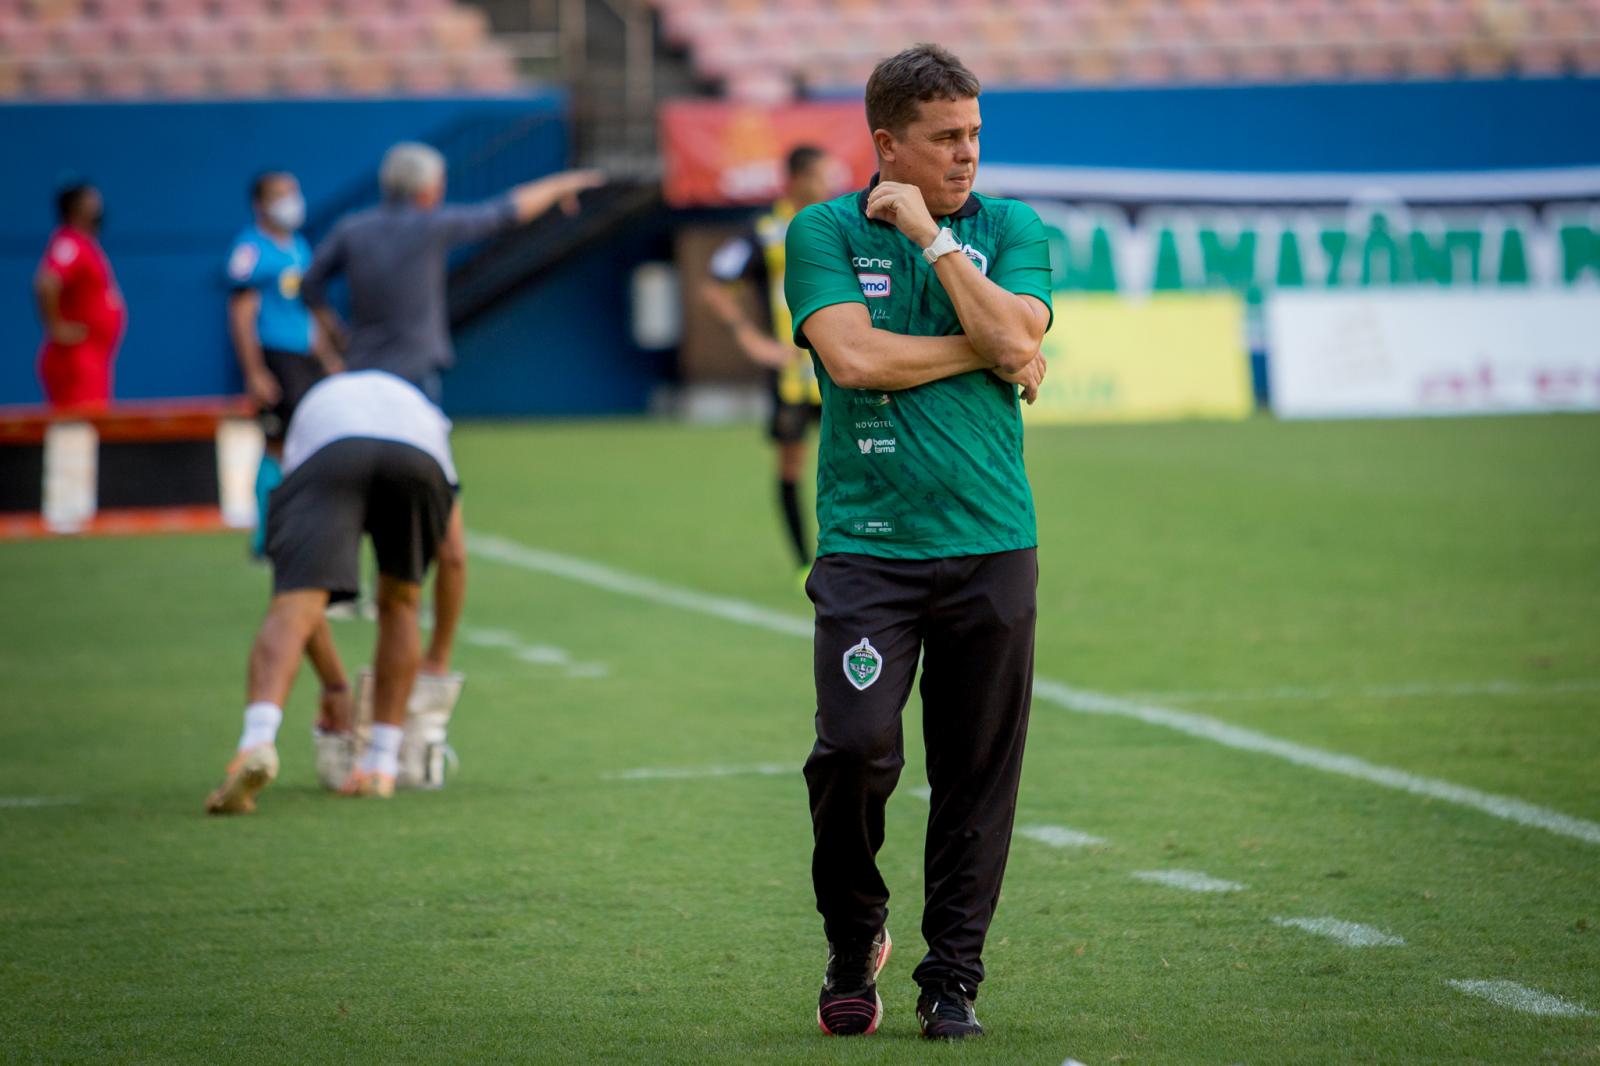 Sem tempo a perder, Manaus FC inicia preparação visando o Floresta